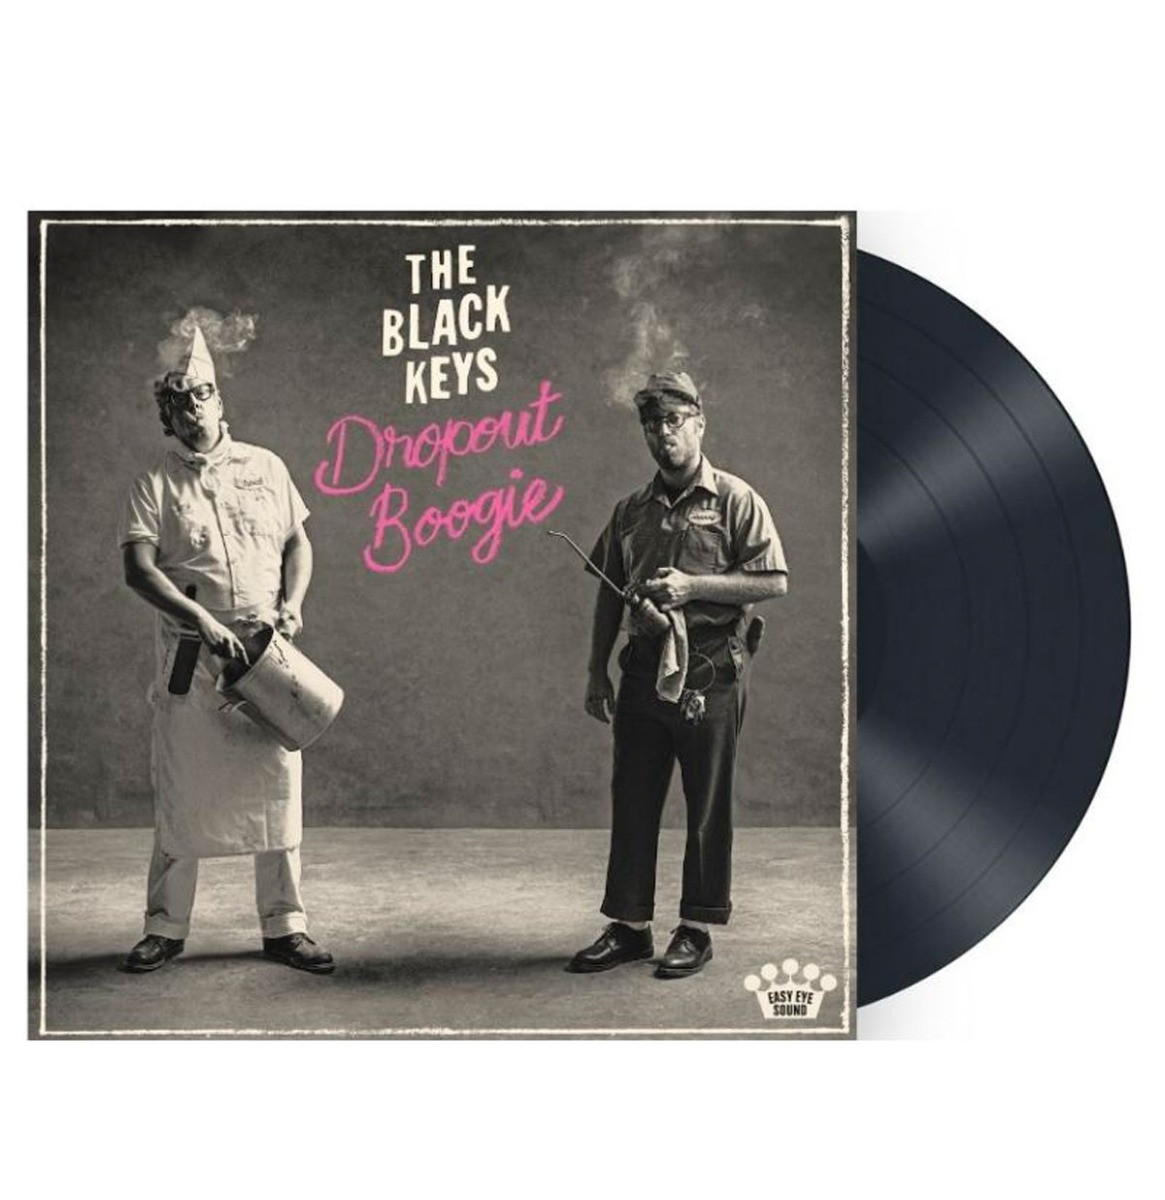 The Black Keys - Dropout Boogie LP